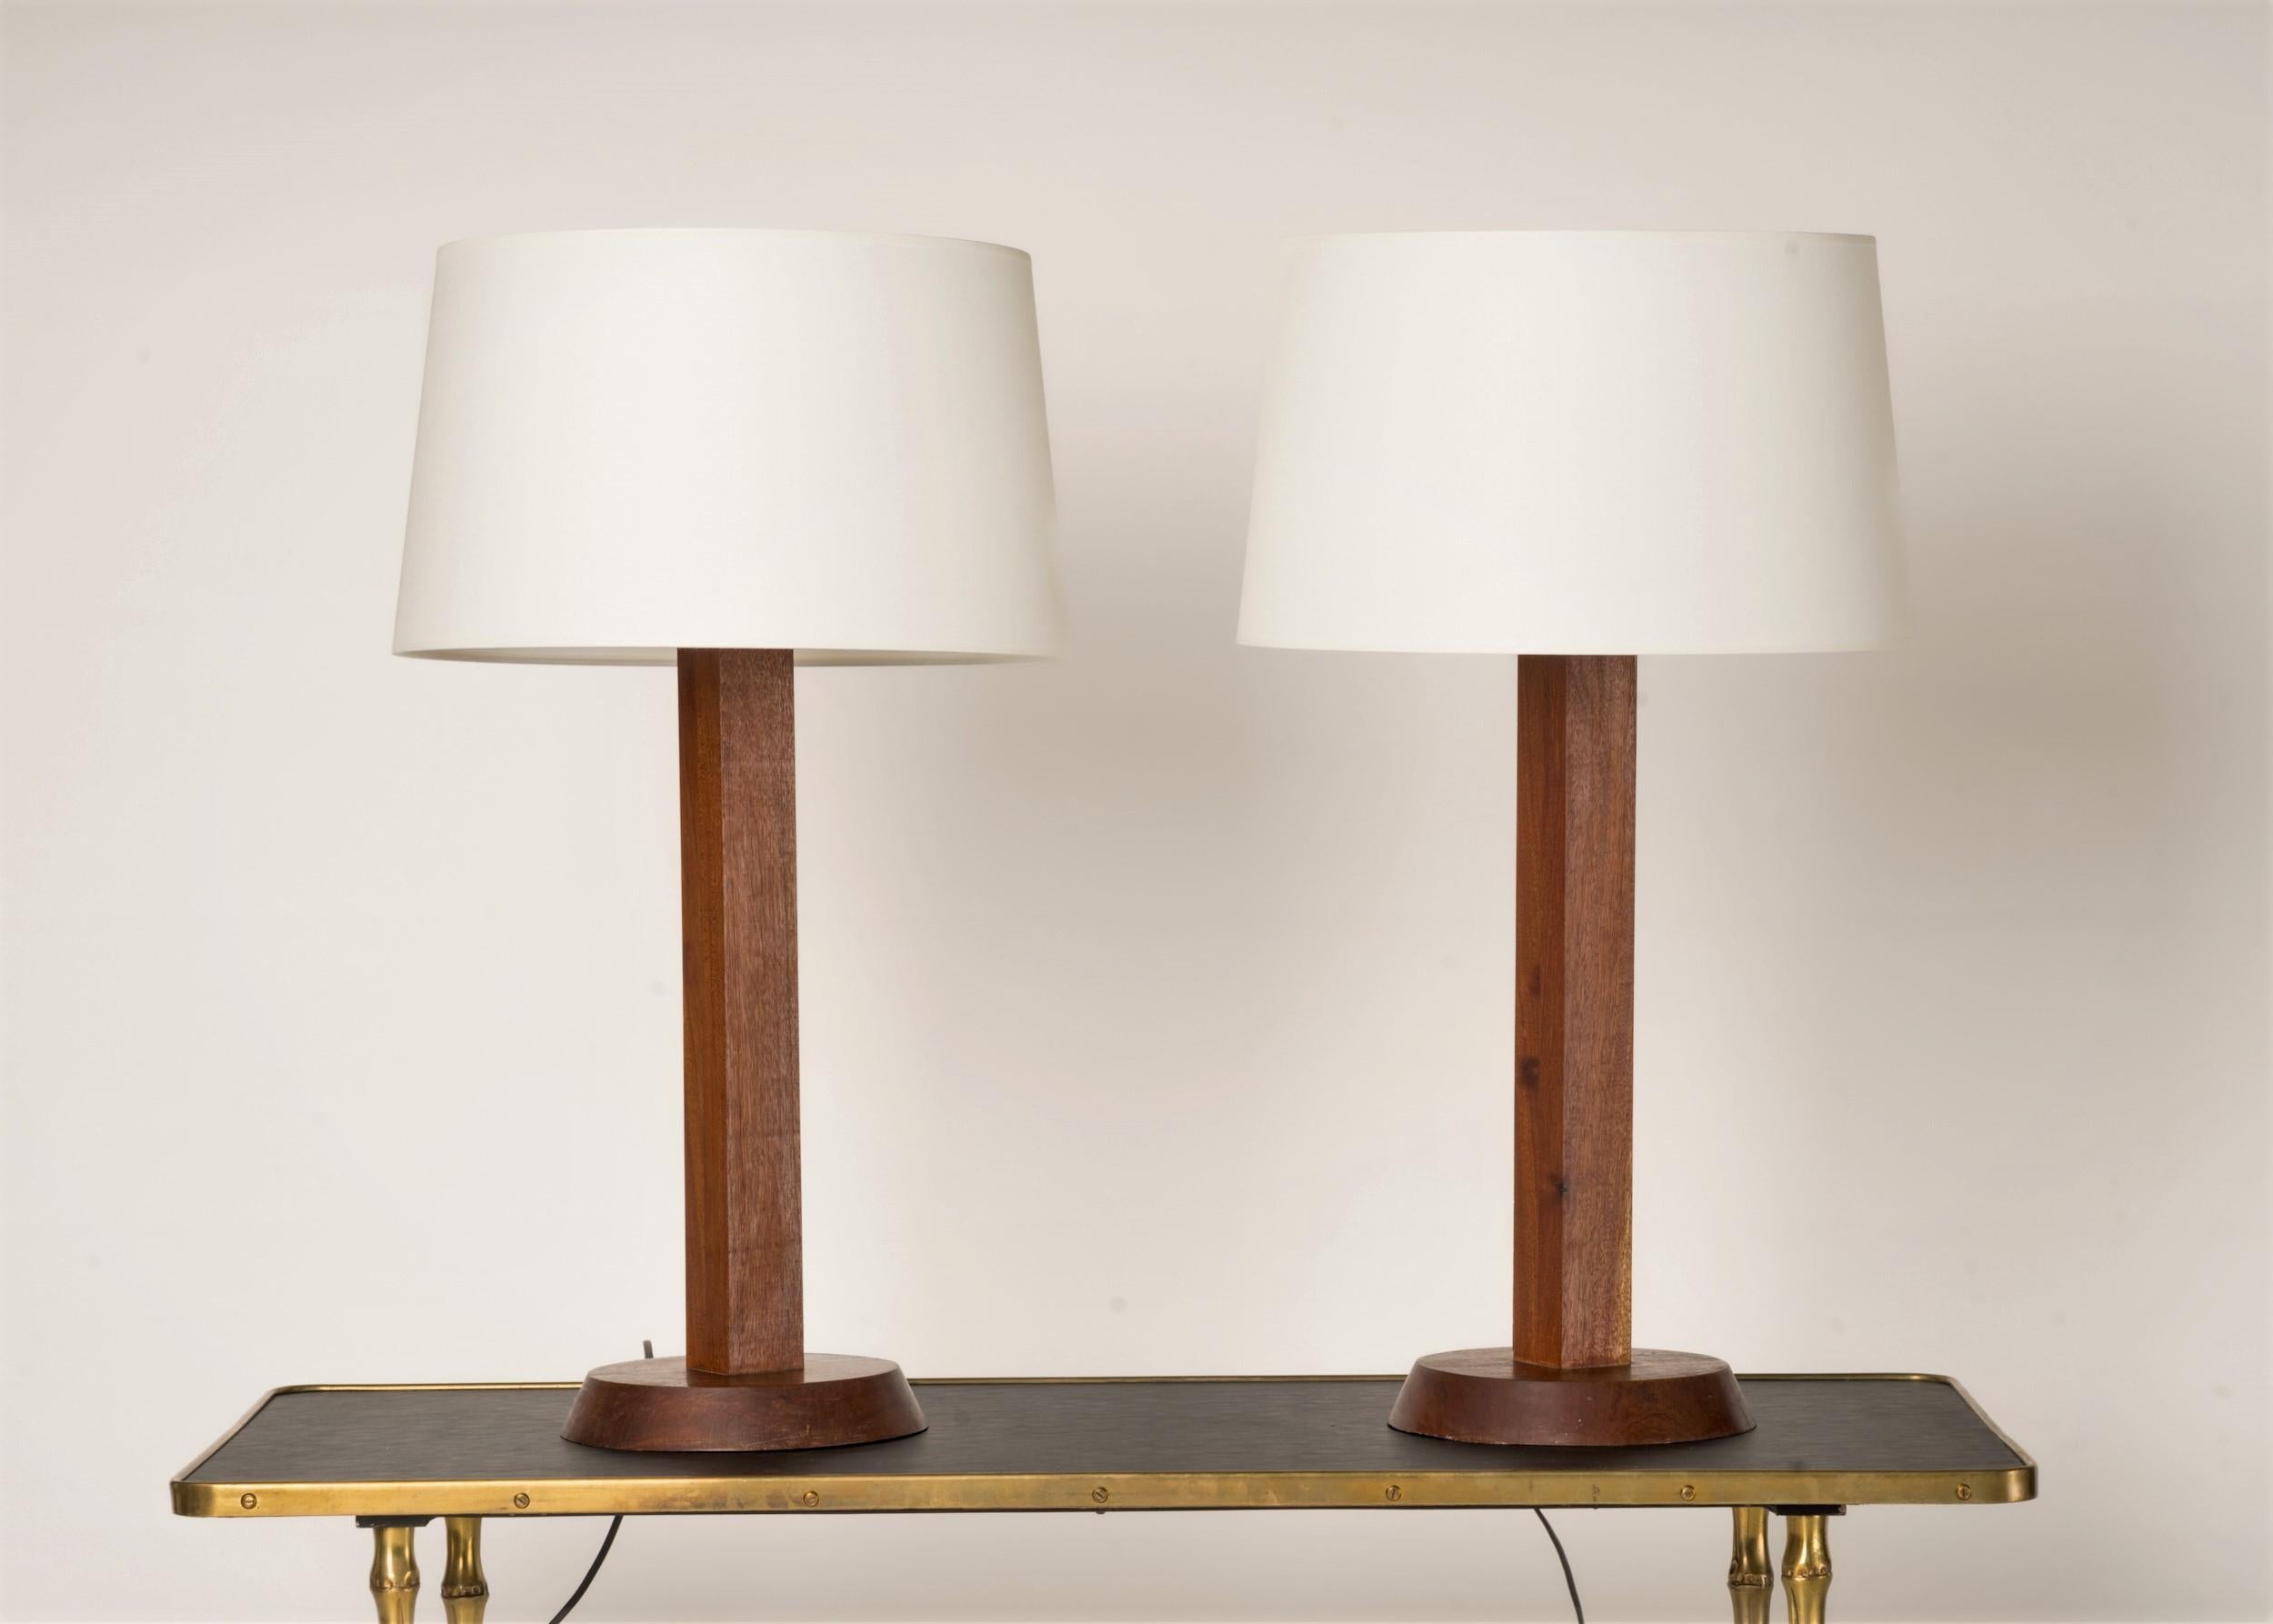 Paire de lampes de table élégamment fabriquées en bois massif.  La base inclinée présente une différence de diamètre entre les niveaux supérieur et inférieur, ce qui lui confère une touche de design subtile.
Prises et câblage européens.
Ces lampes